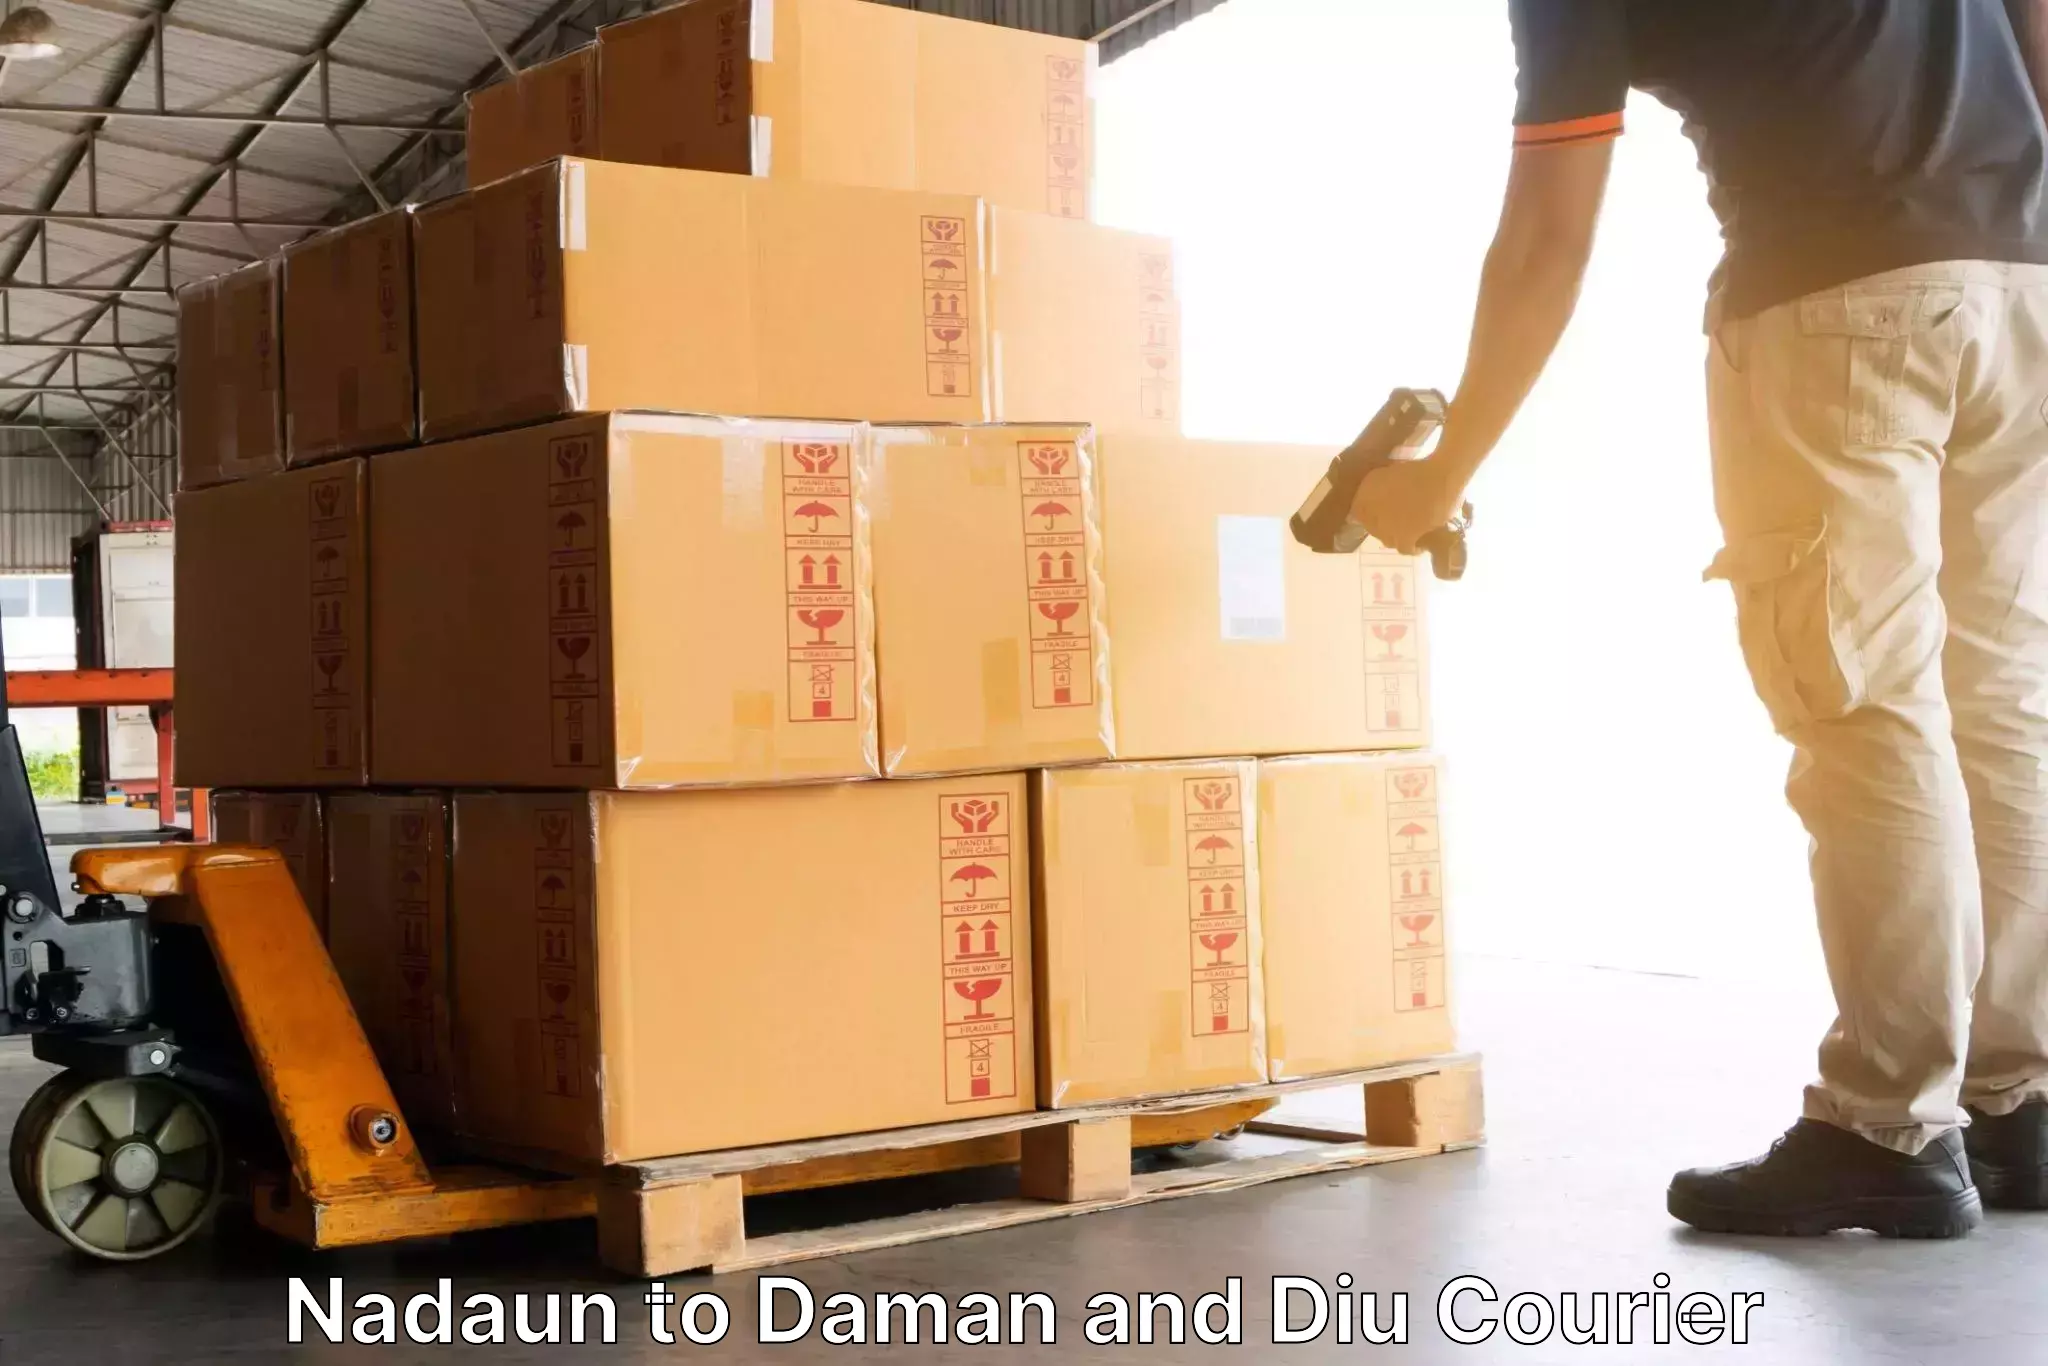 Individual parcel service Nadaun to Daman and Diu